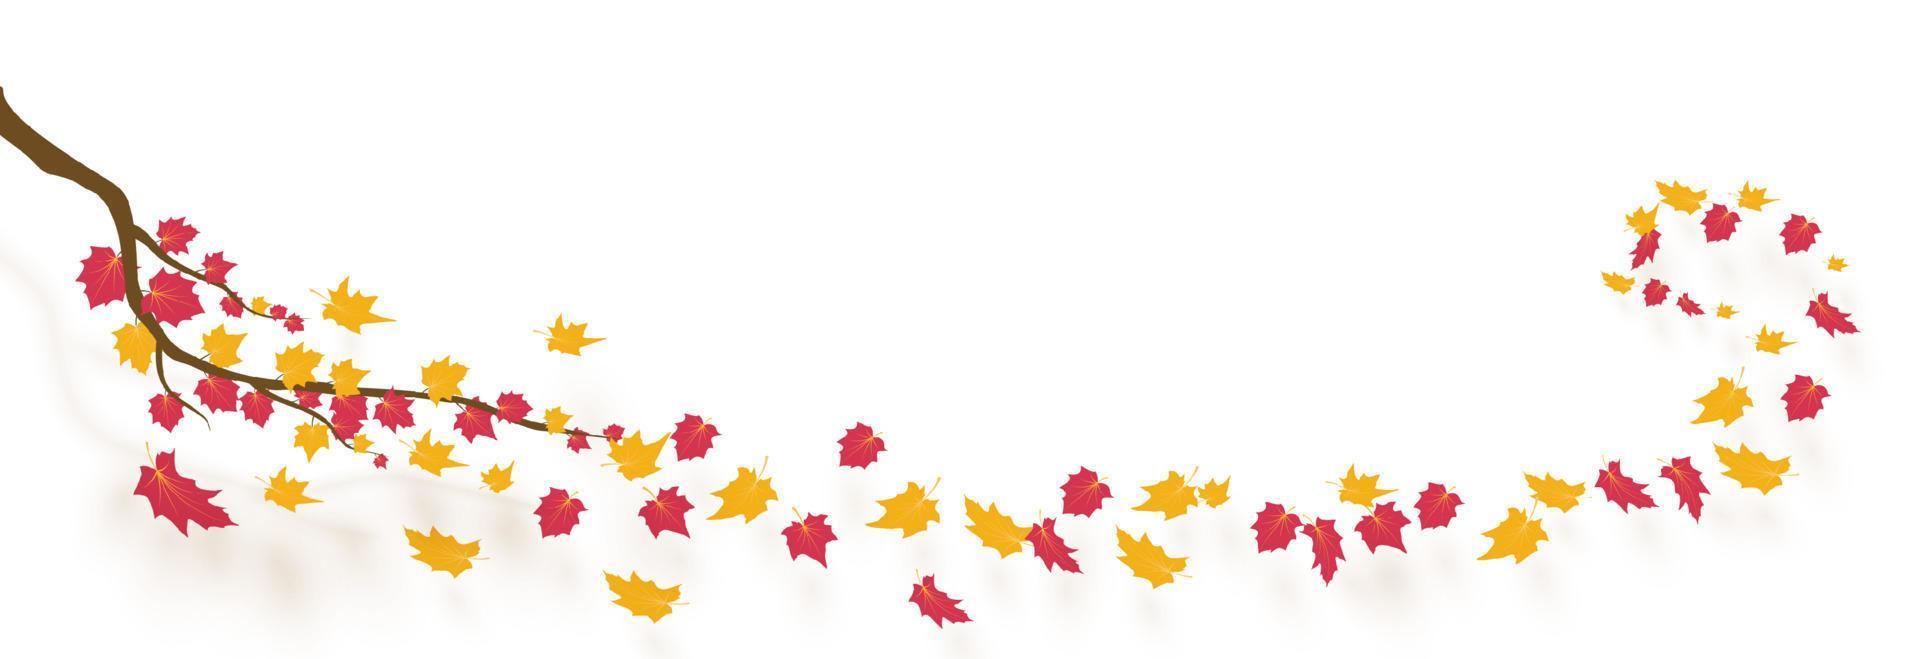 rama de otoño con hojas que caen. ilustración vectorial vector